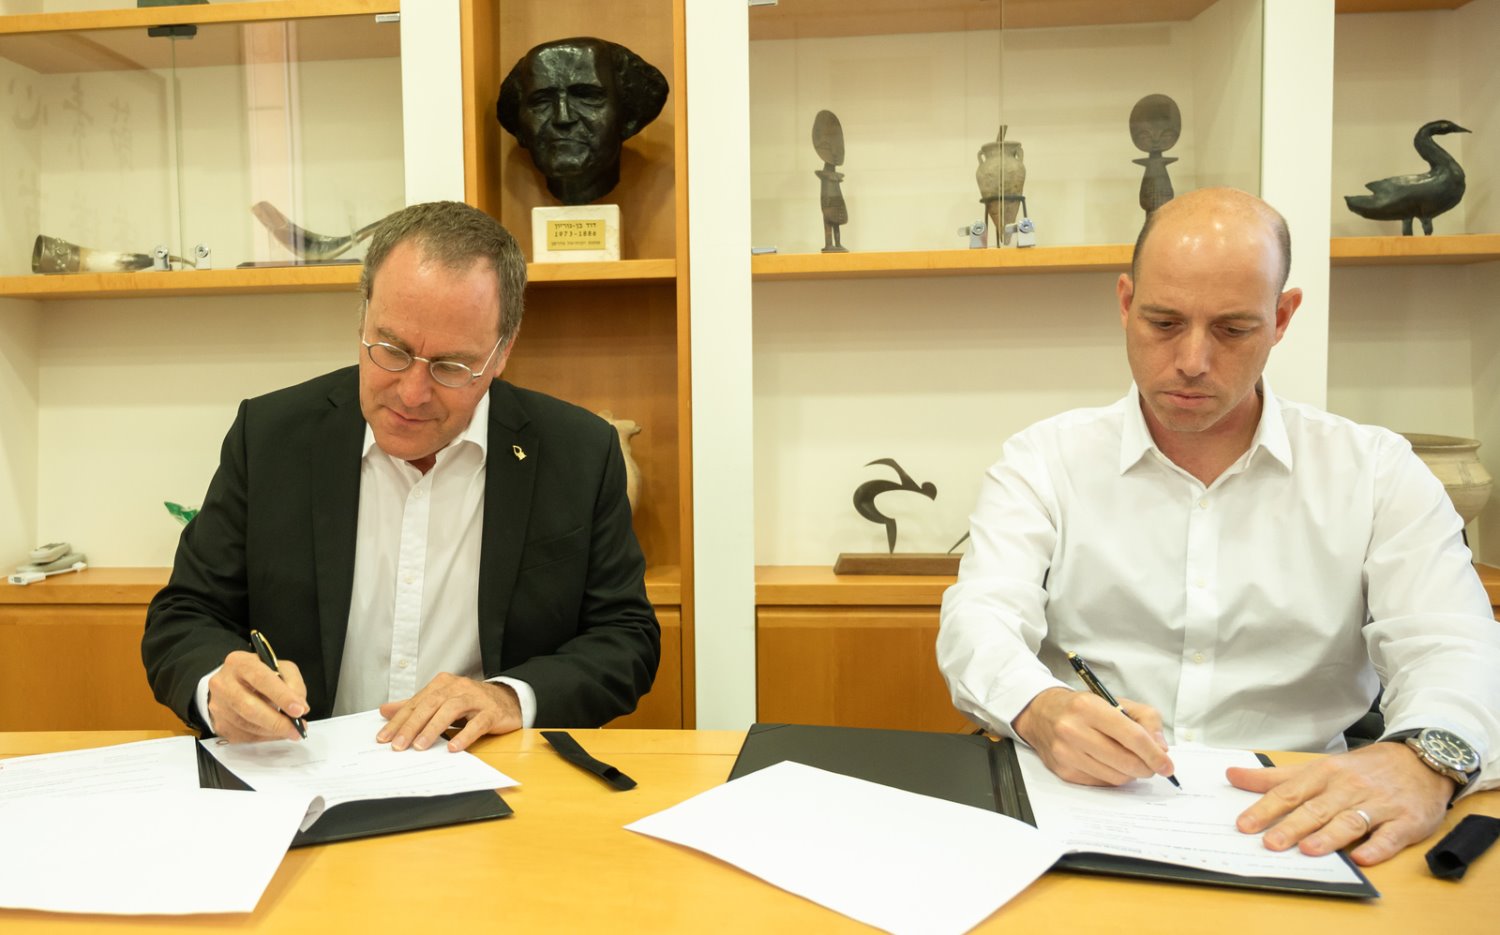 צביקה שווימר ופרופסור דניאל חיימוביץ בטקס החתימה על הסכם שיתוף הפעולה. קרדיט צלם דני מכליס